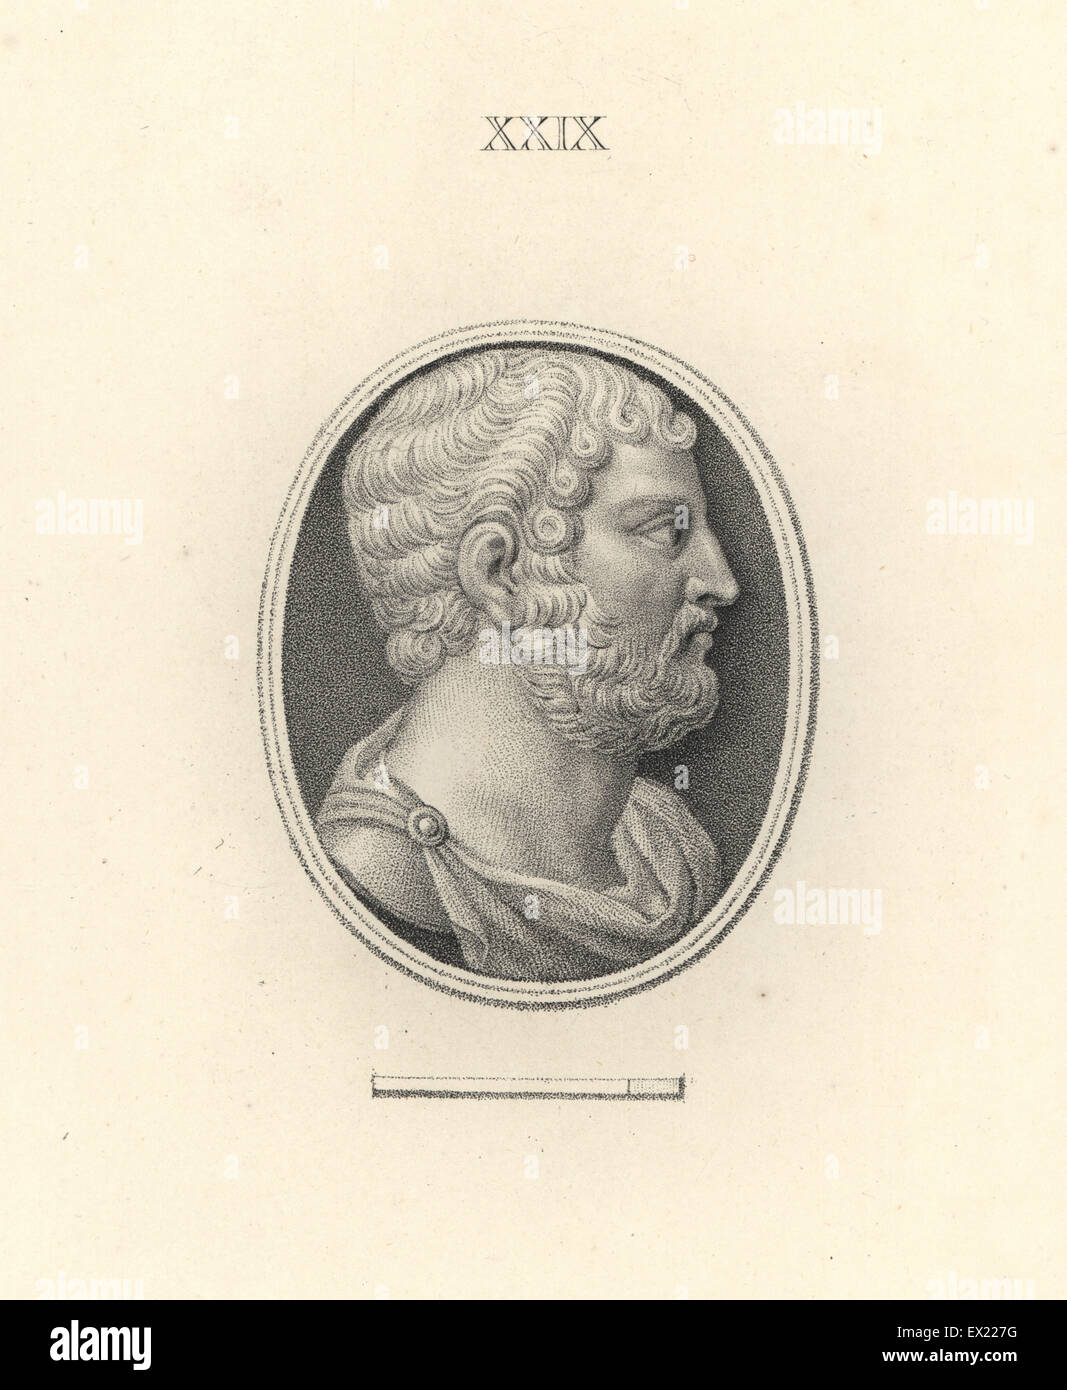 Römische Kaiser Hadrian. Kupferstich von Francesco Bartolozzi aus 108 Platten der Antike Schmuckstücke, 1860. Die Edelsteine wurden von dem Herzog von Marlborough Sammlung. Stockfoto